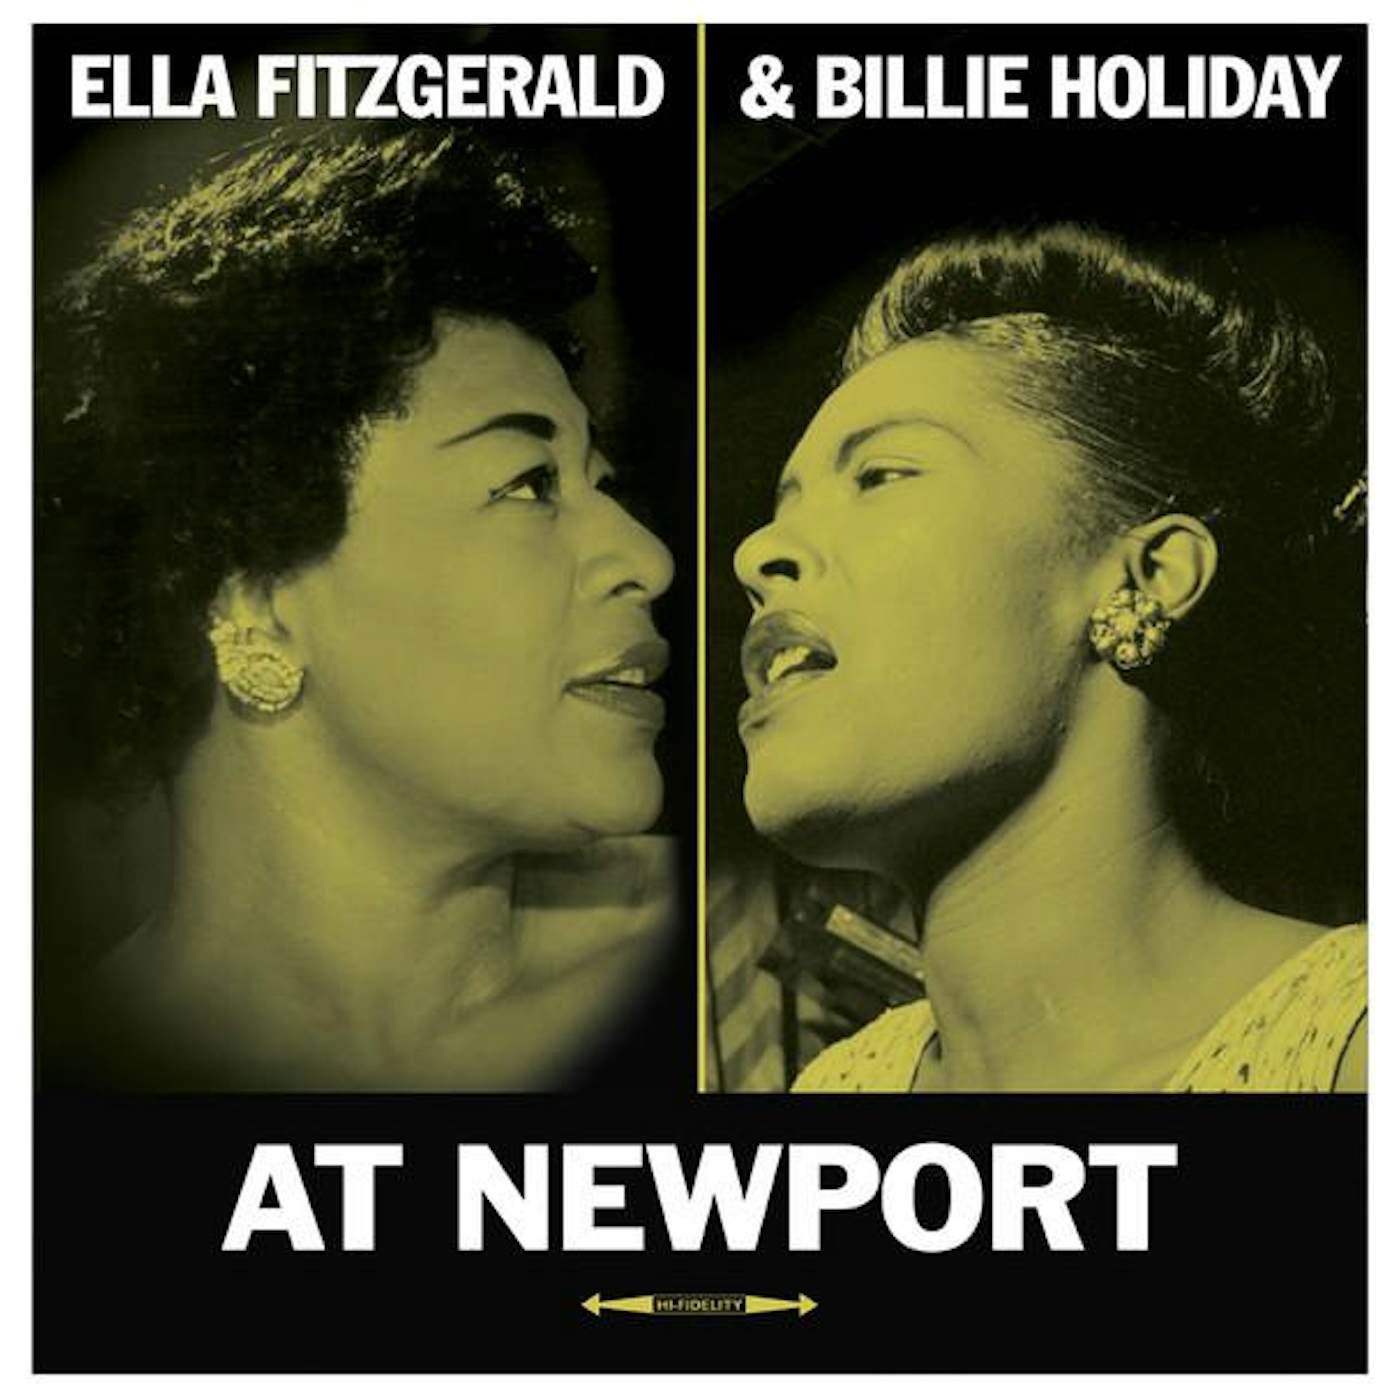 Ella Fitzgerald / Billie Holiday AT NEWPORT Vinyl Record